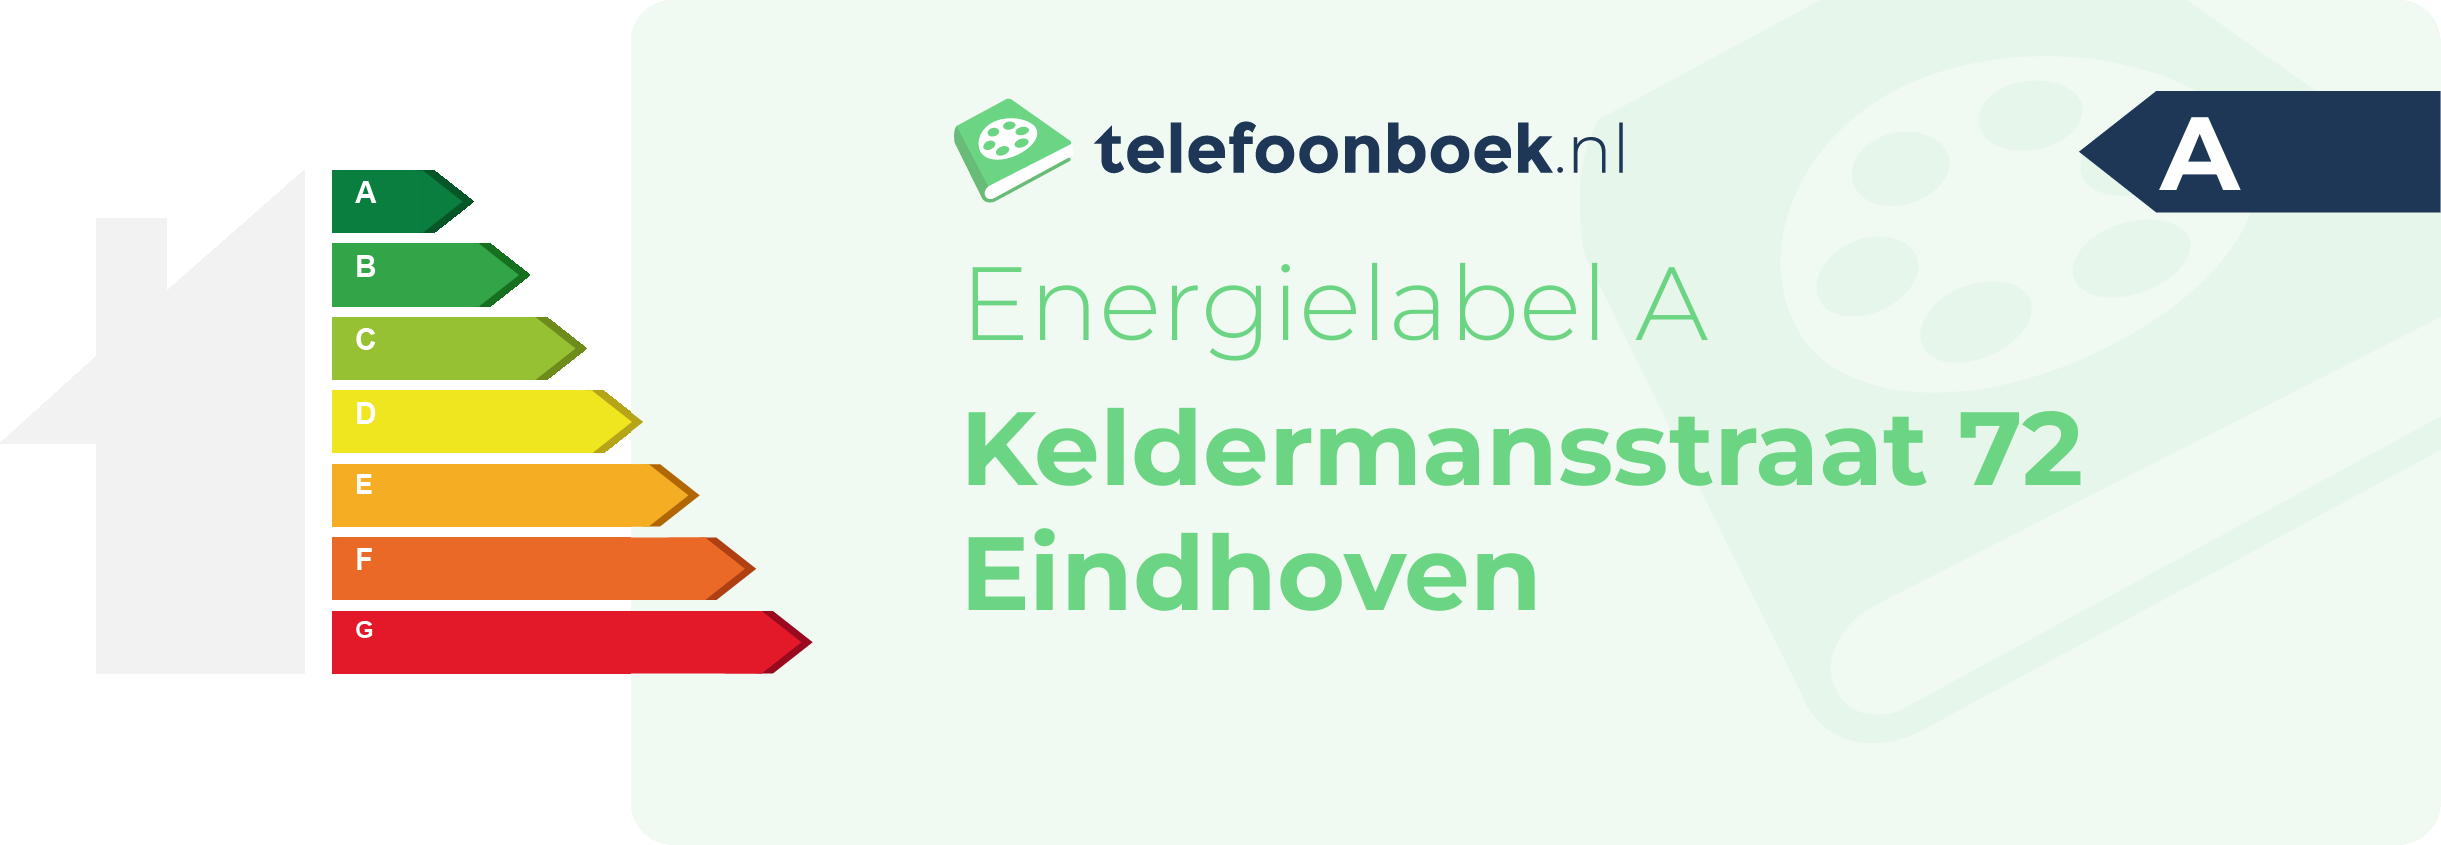 Energielabel Keldermansstraat 72 Eindhoven